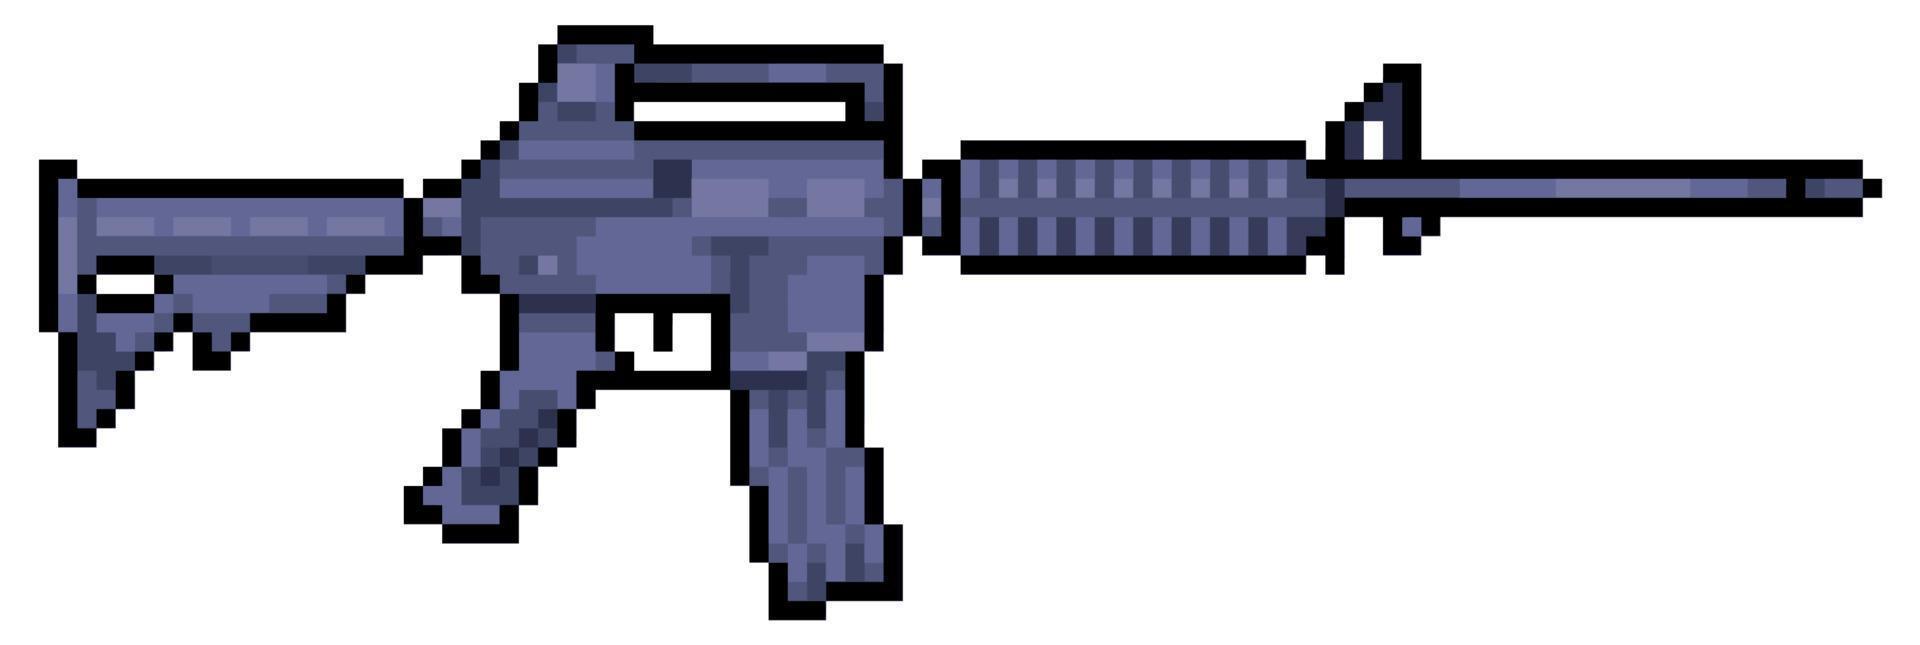 pixel art m4 gevär. m16 skjutvapen vektor ikon för 8-bitars spel på vit bakgrund